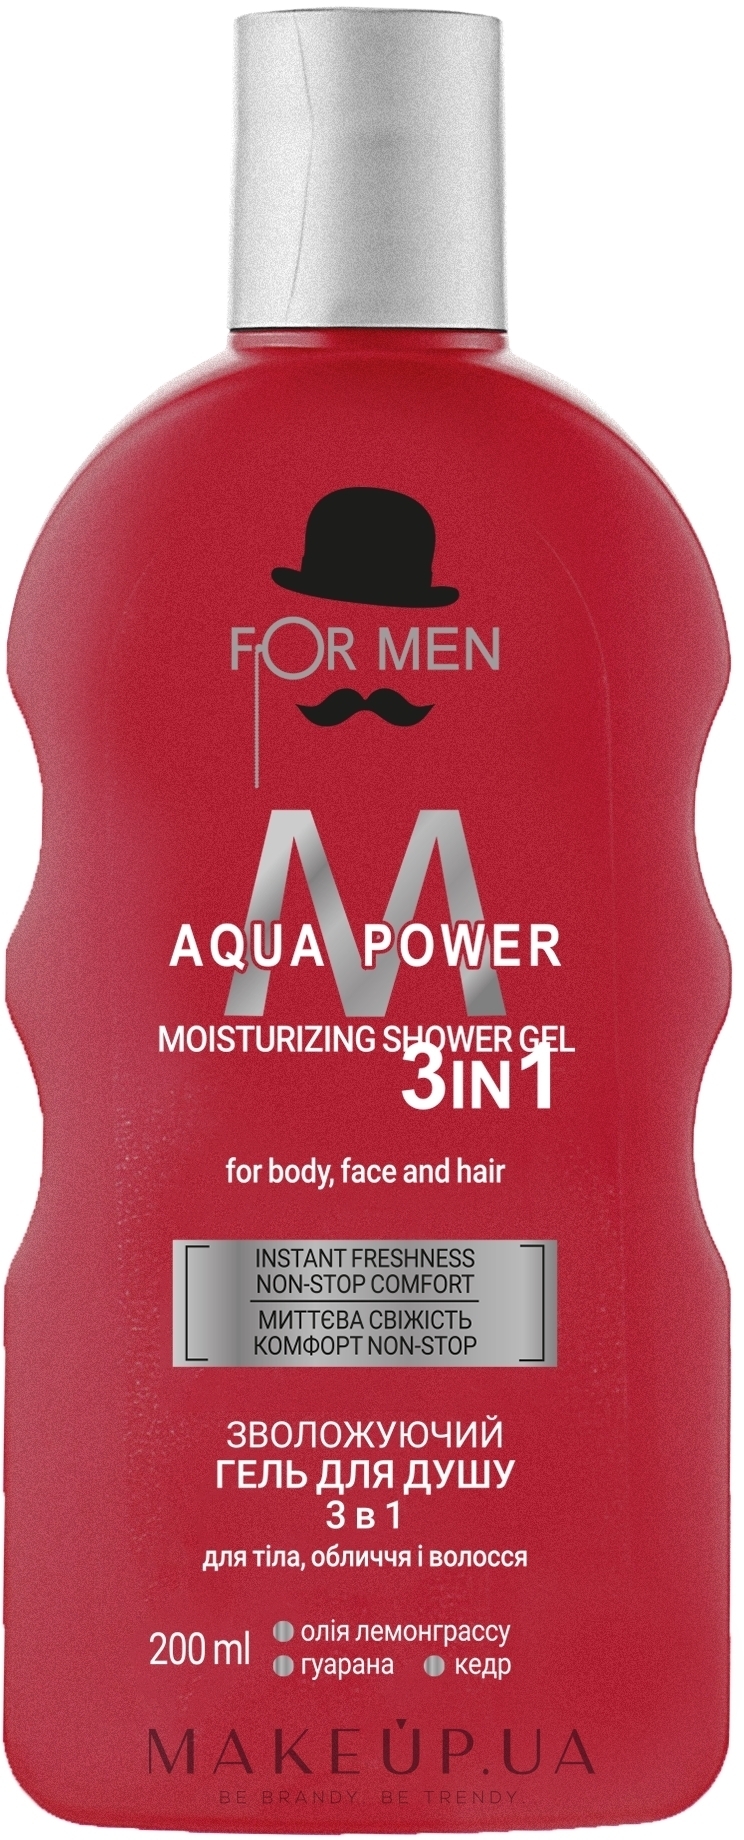 Зволожувальний гель для душу 3в1 - For Men Aqua Power Shower Gel — фото 200ml